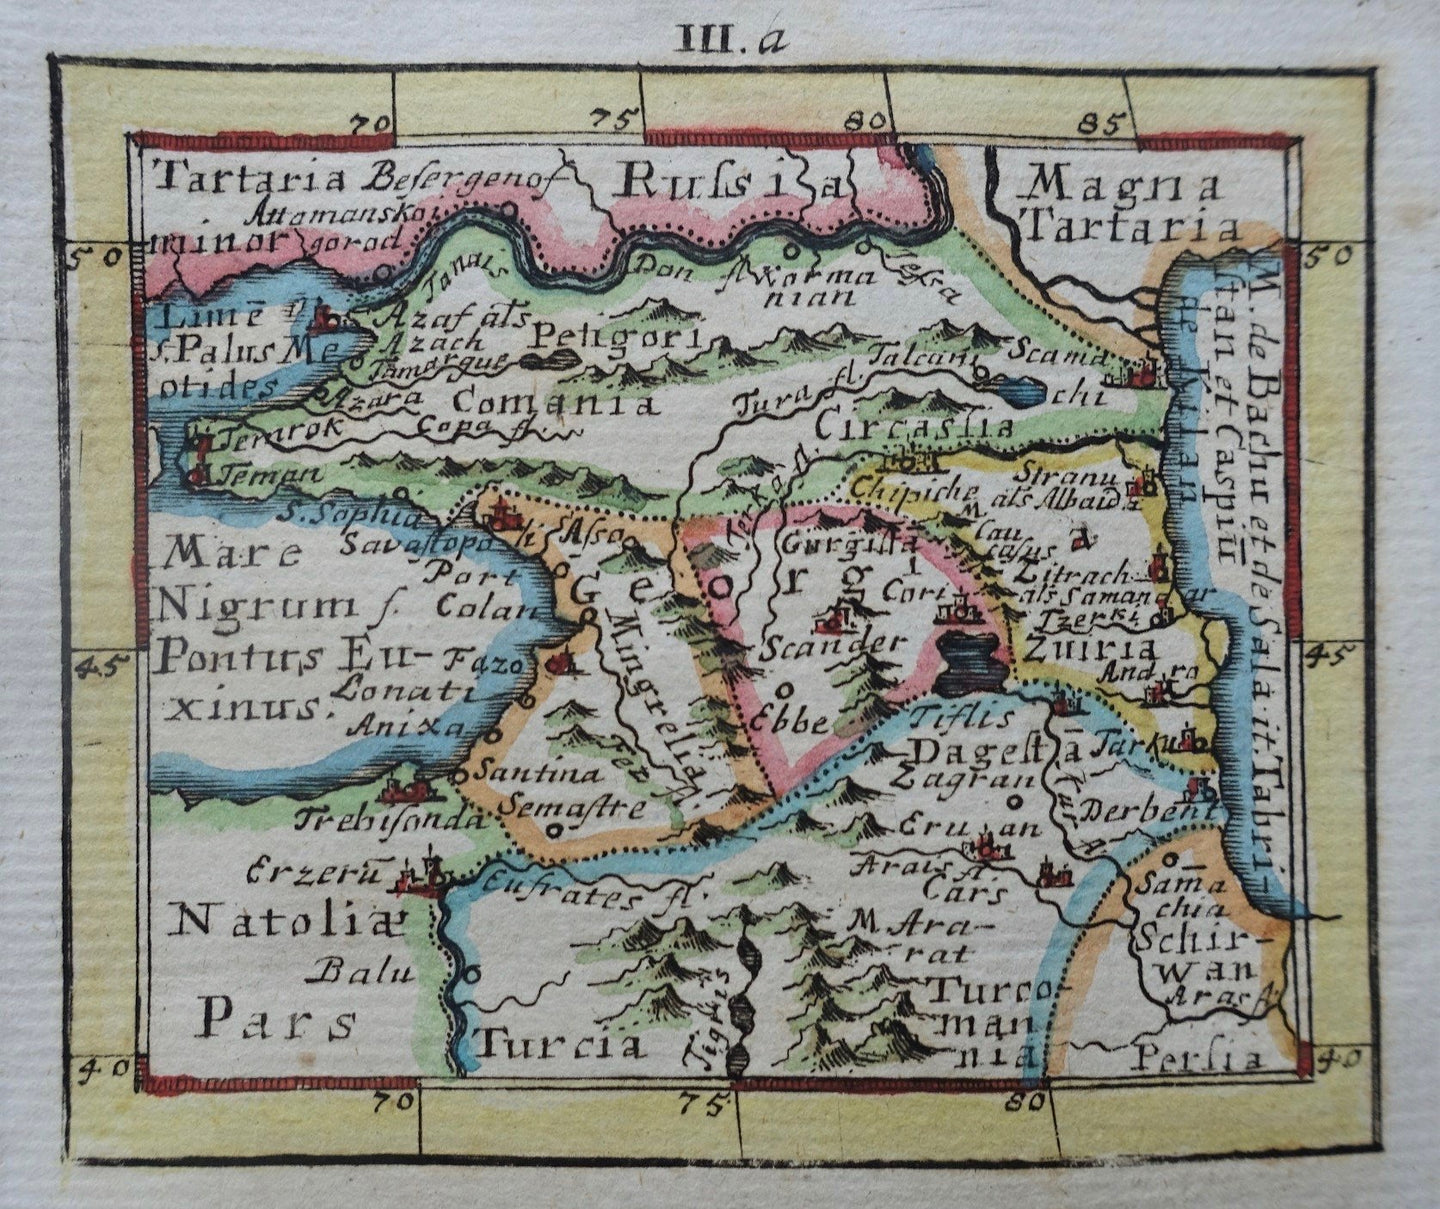 Kaukasus Rusland Caucasus Russia - J U Müller - 1702